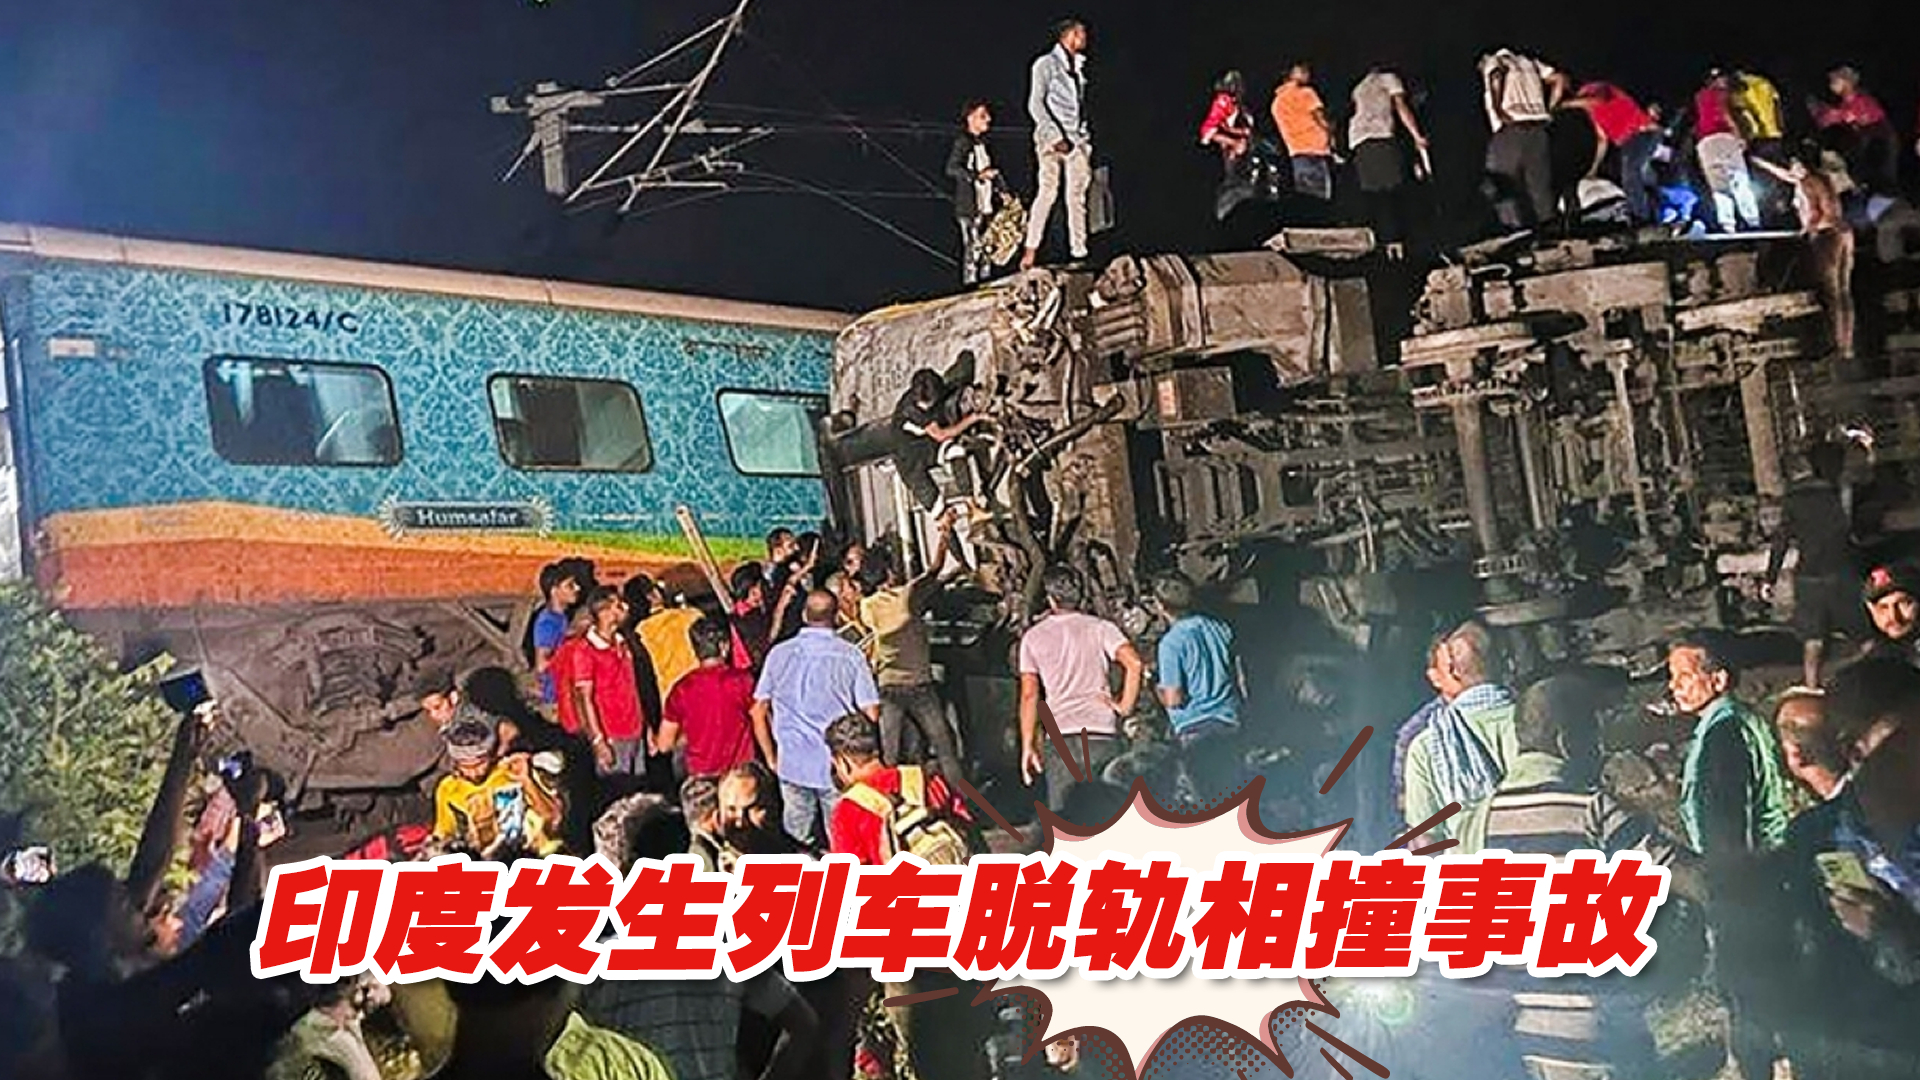 印度大巴车从桥上坠落 致数十人死伤_北京时间